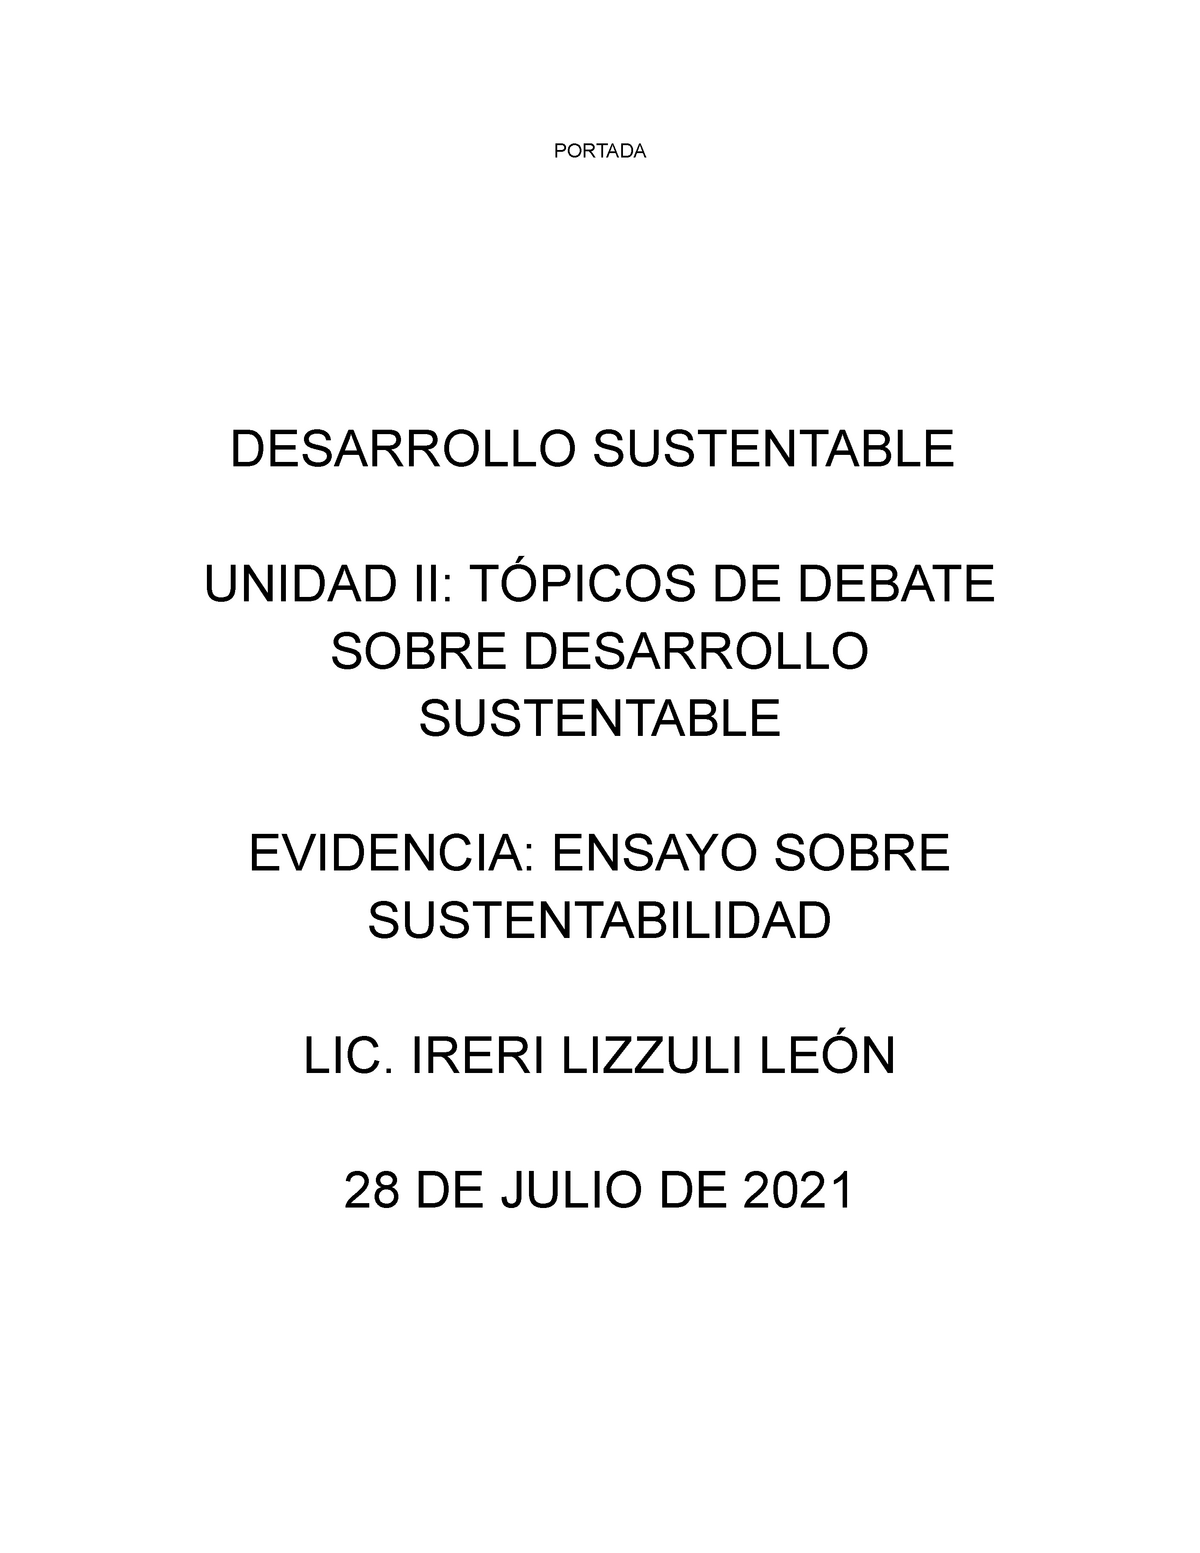 Reflexion temas sustentabilidad copia - PORTADA DESARROLLO SUSTENTABLE  UNIDAD II: TÓPICOS DE DEBATE - Studocu